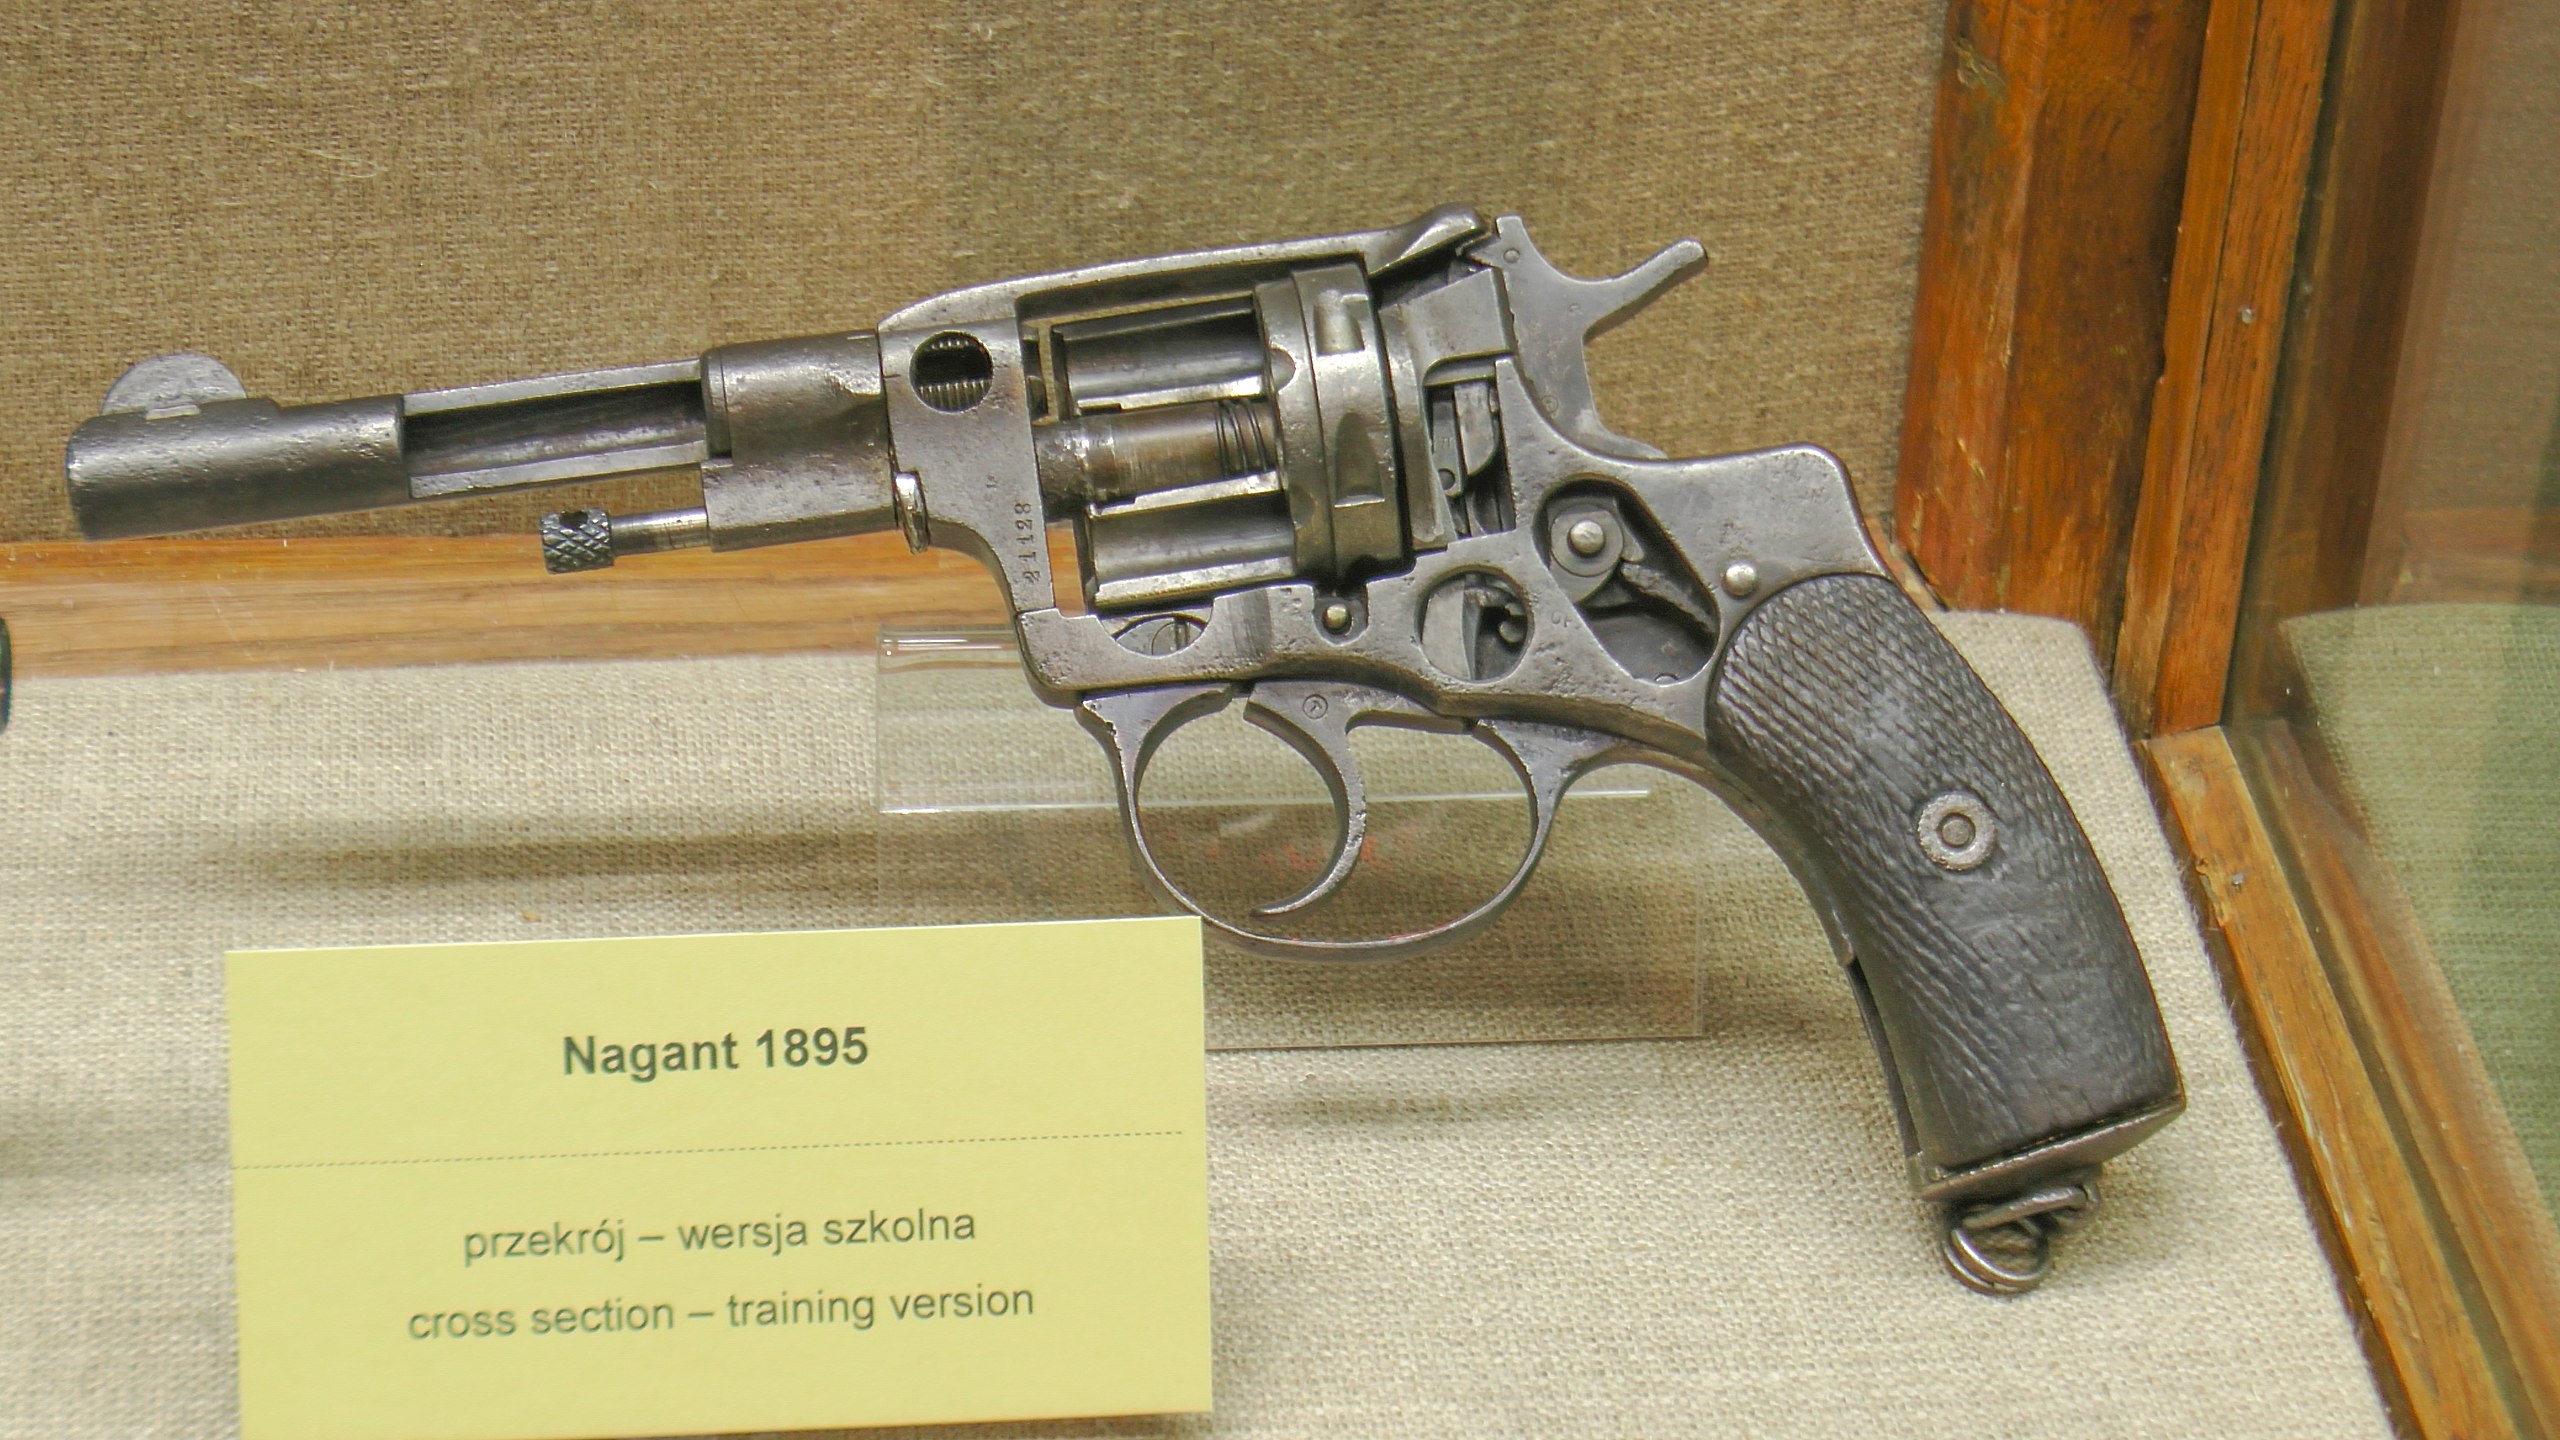 Nagant M1895 - Wikipedia